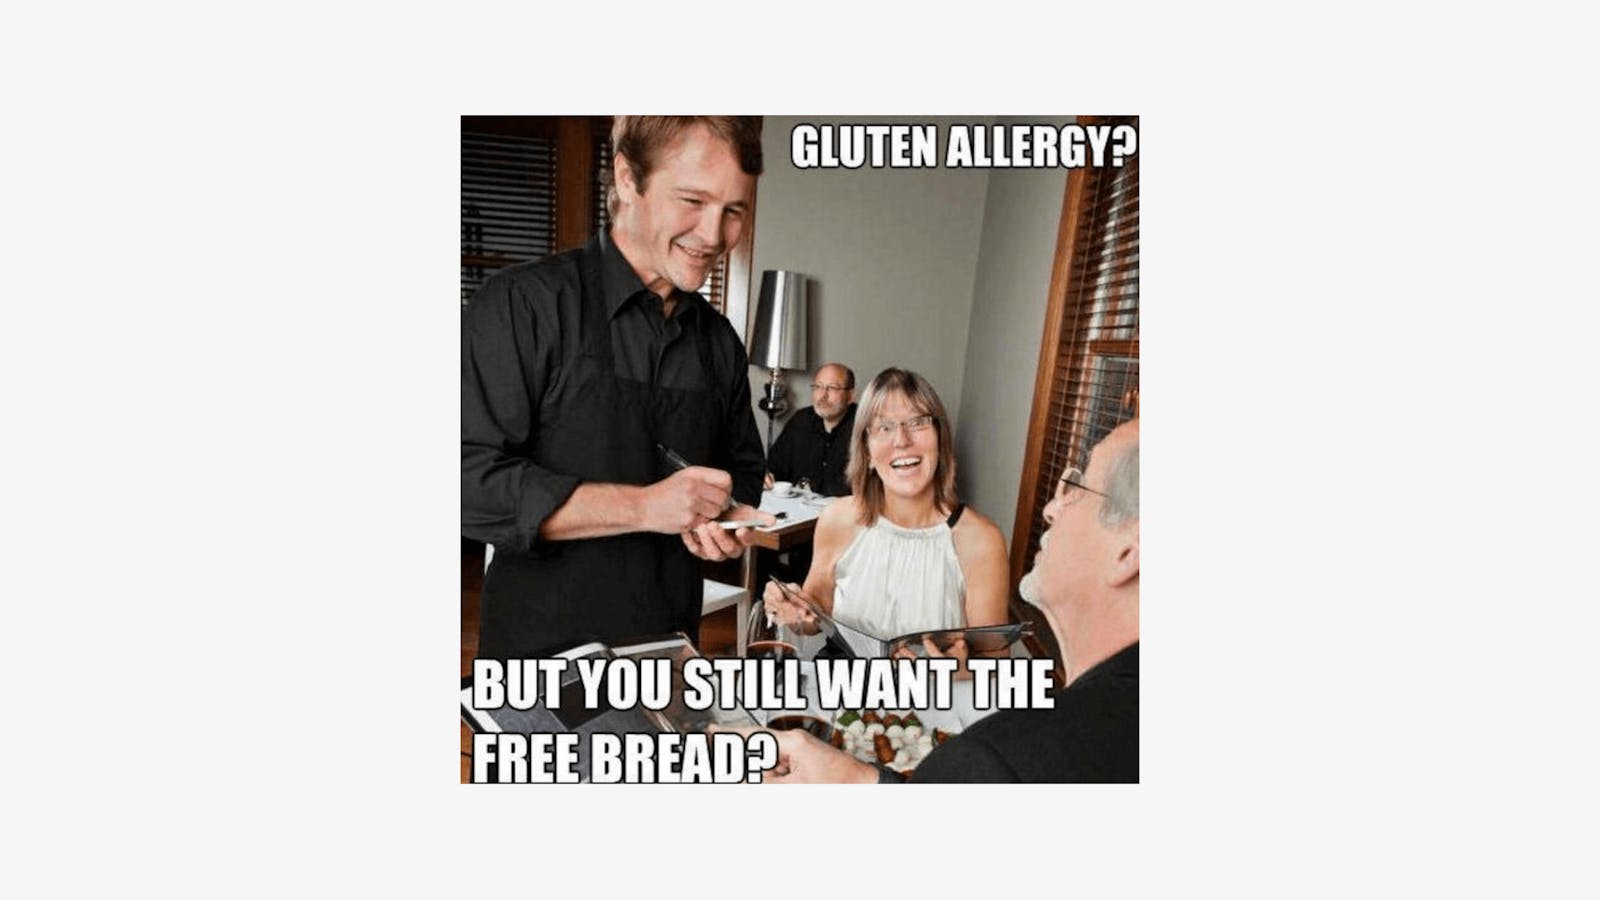 Restaurant meme about gluten allergies. 